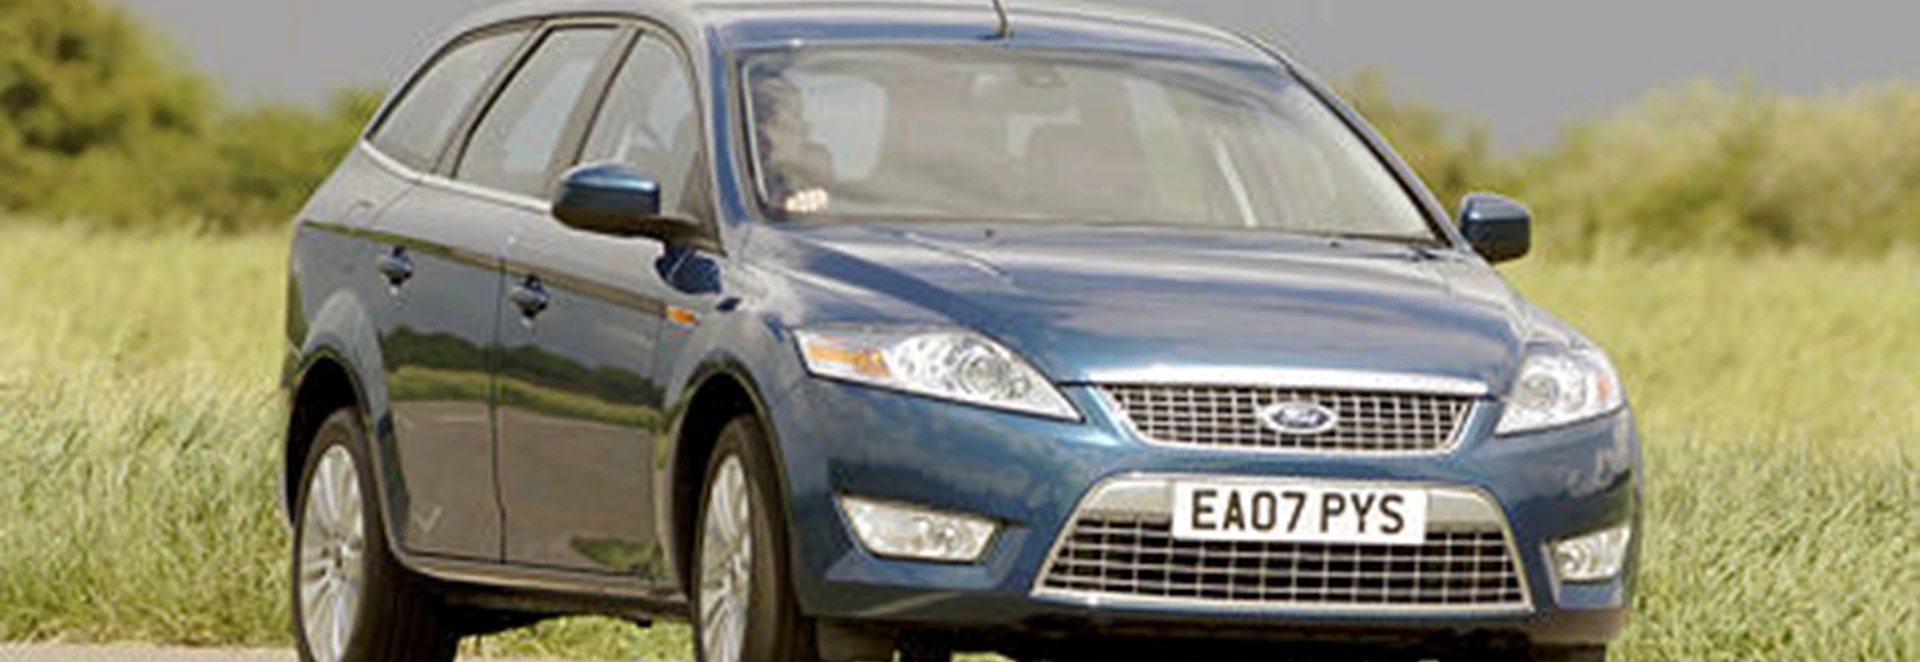 Ford Mondeo 2.0 TDCi Titanium Estate Automatic 